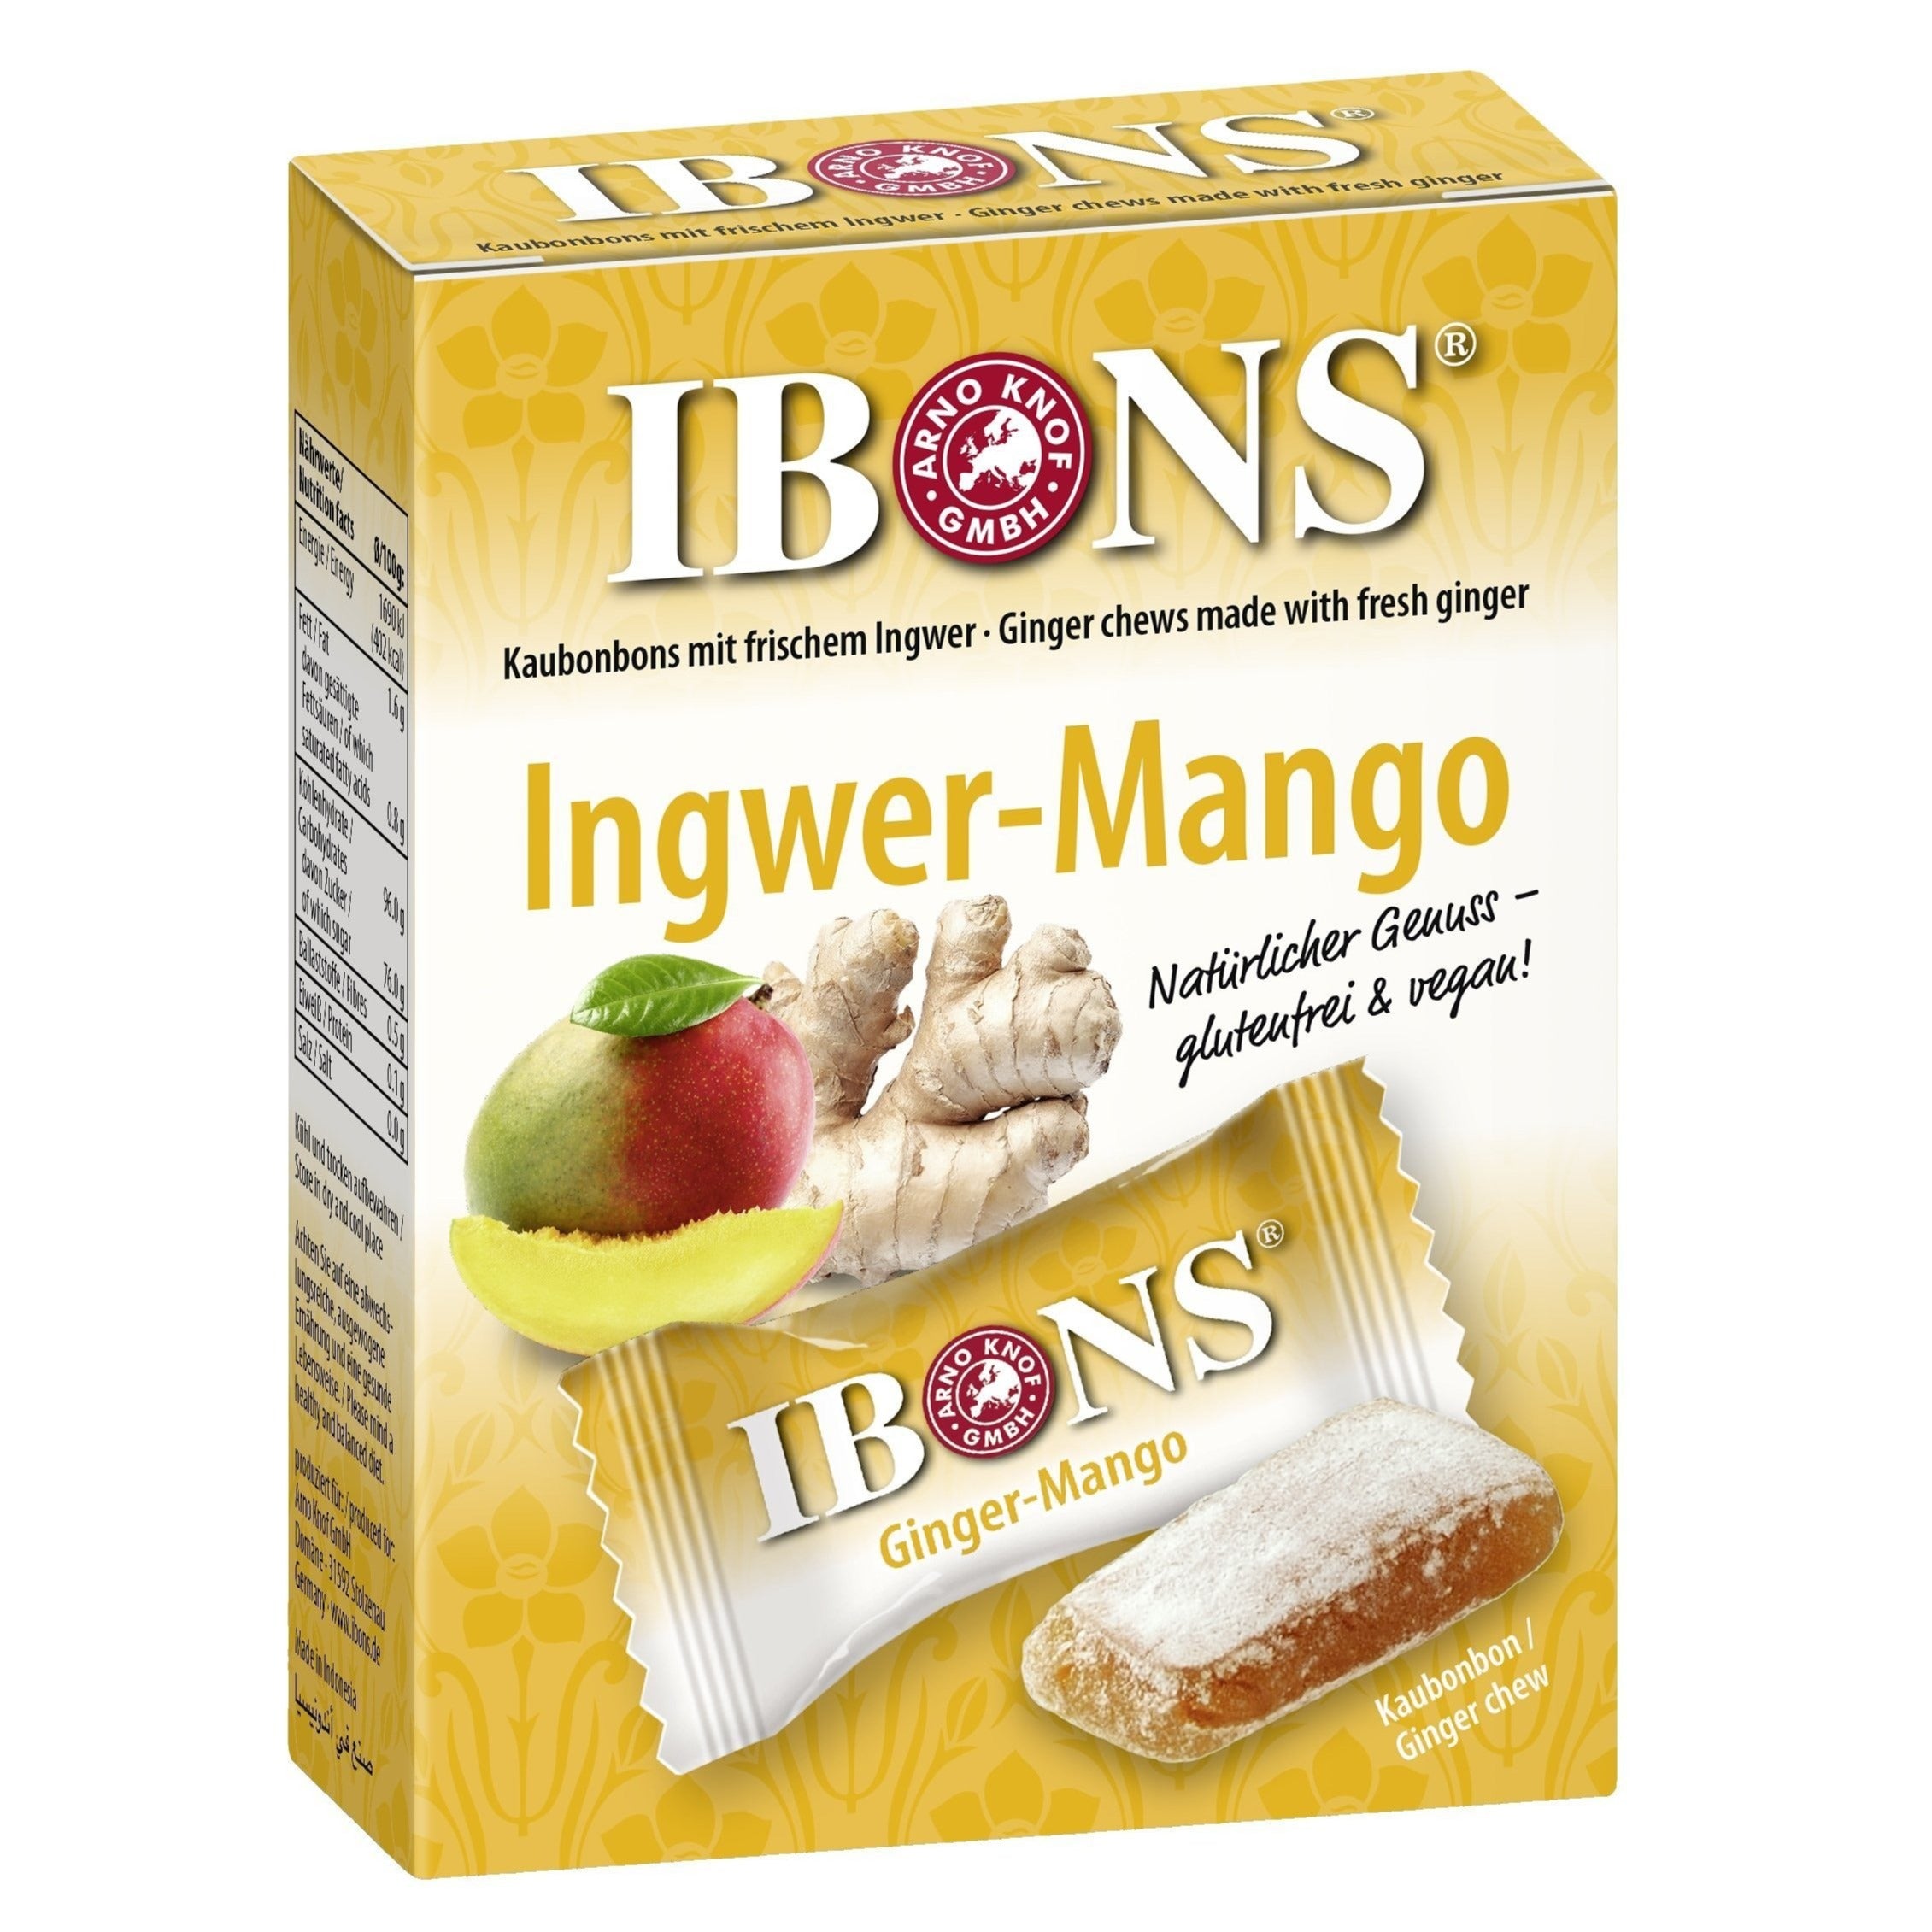 Image of Ingwer-Mango Bonbon - 60g